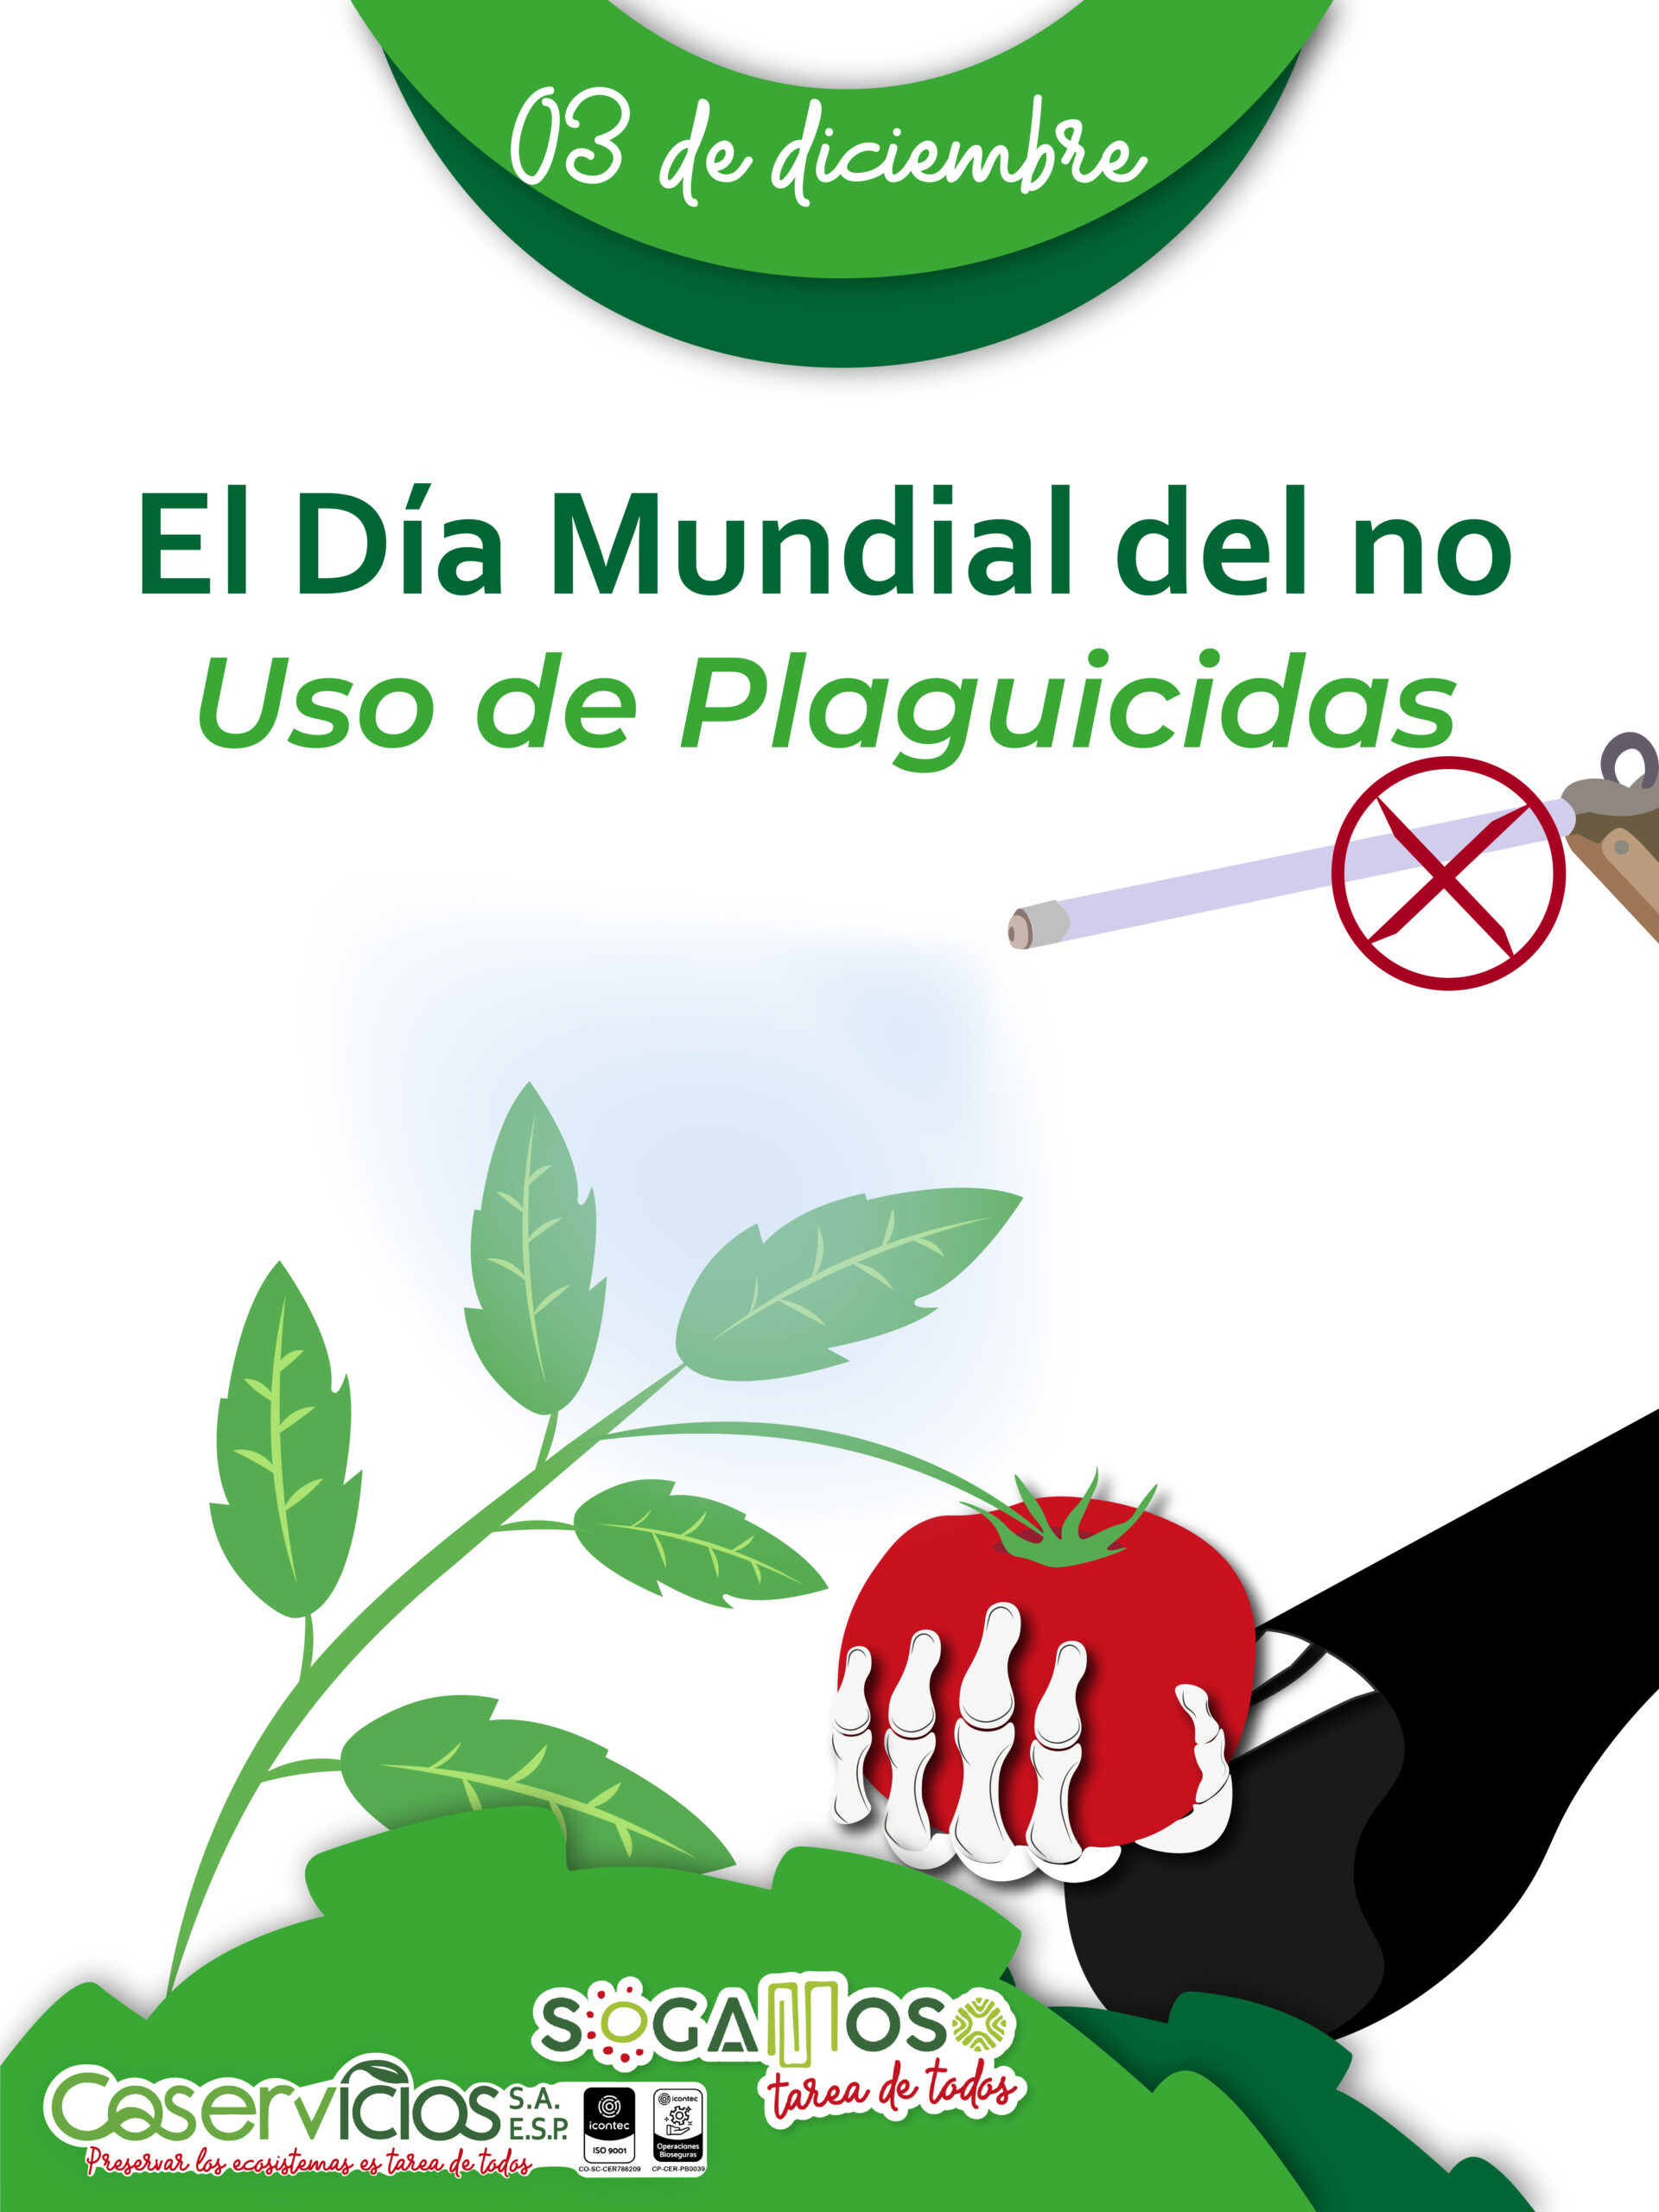 El día mundial del no uso de plaguicidas